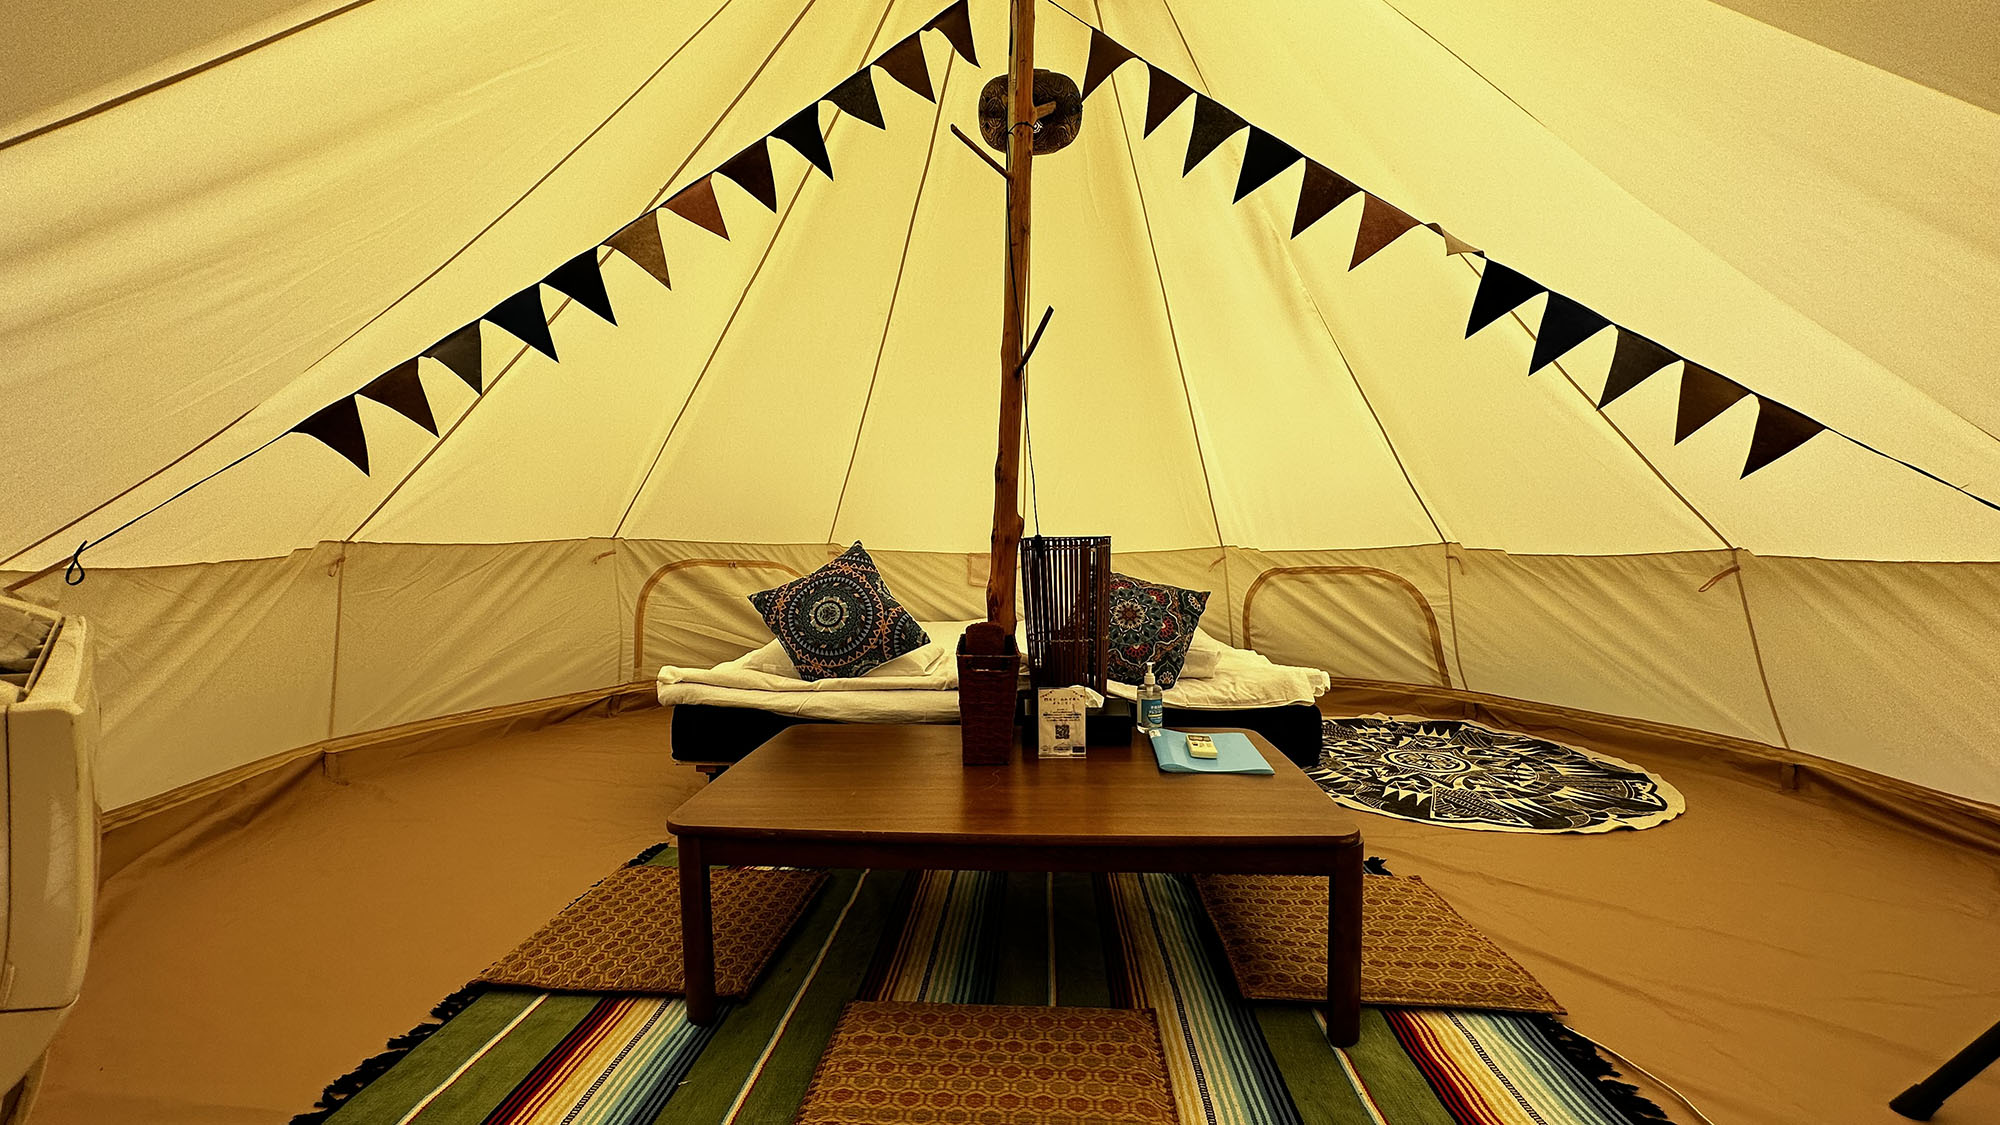 ・【グランピング】空調や設備が整った綺麗なテントで泊まれます